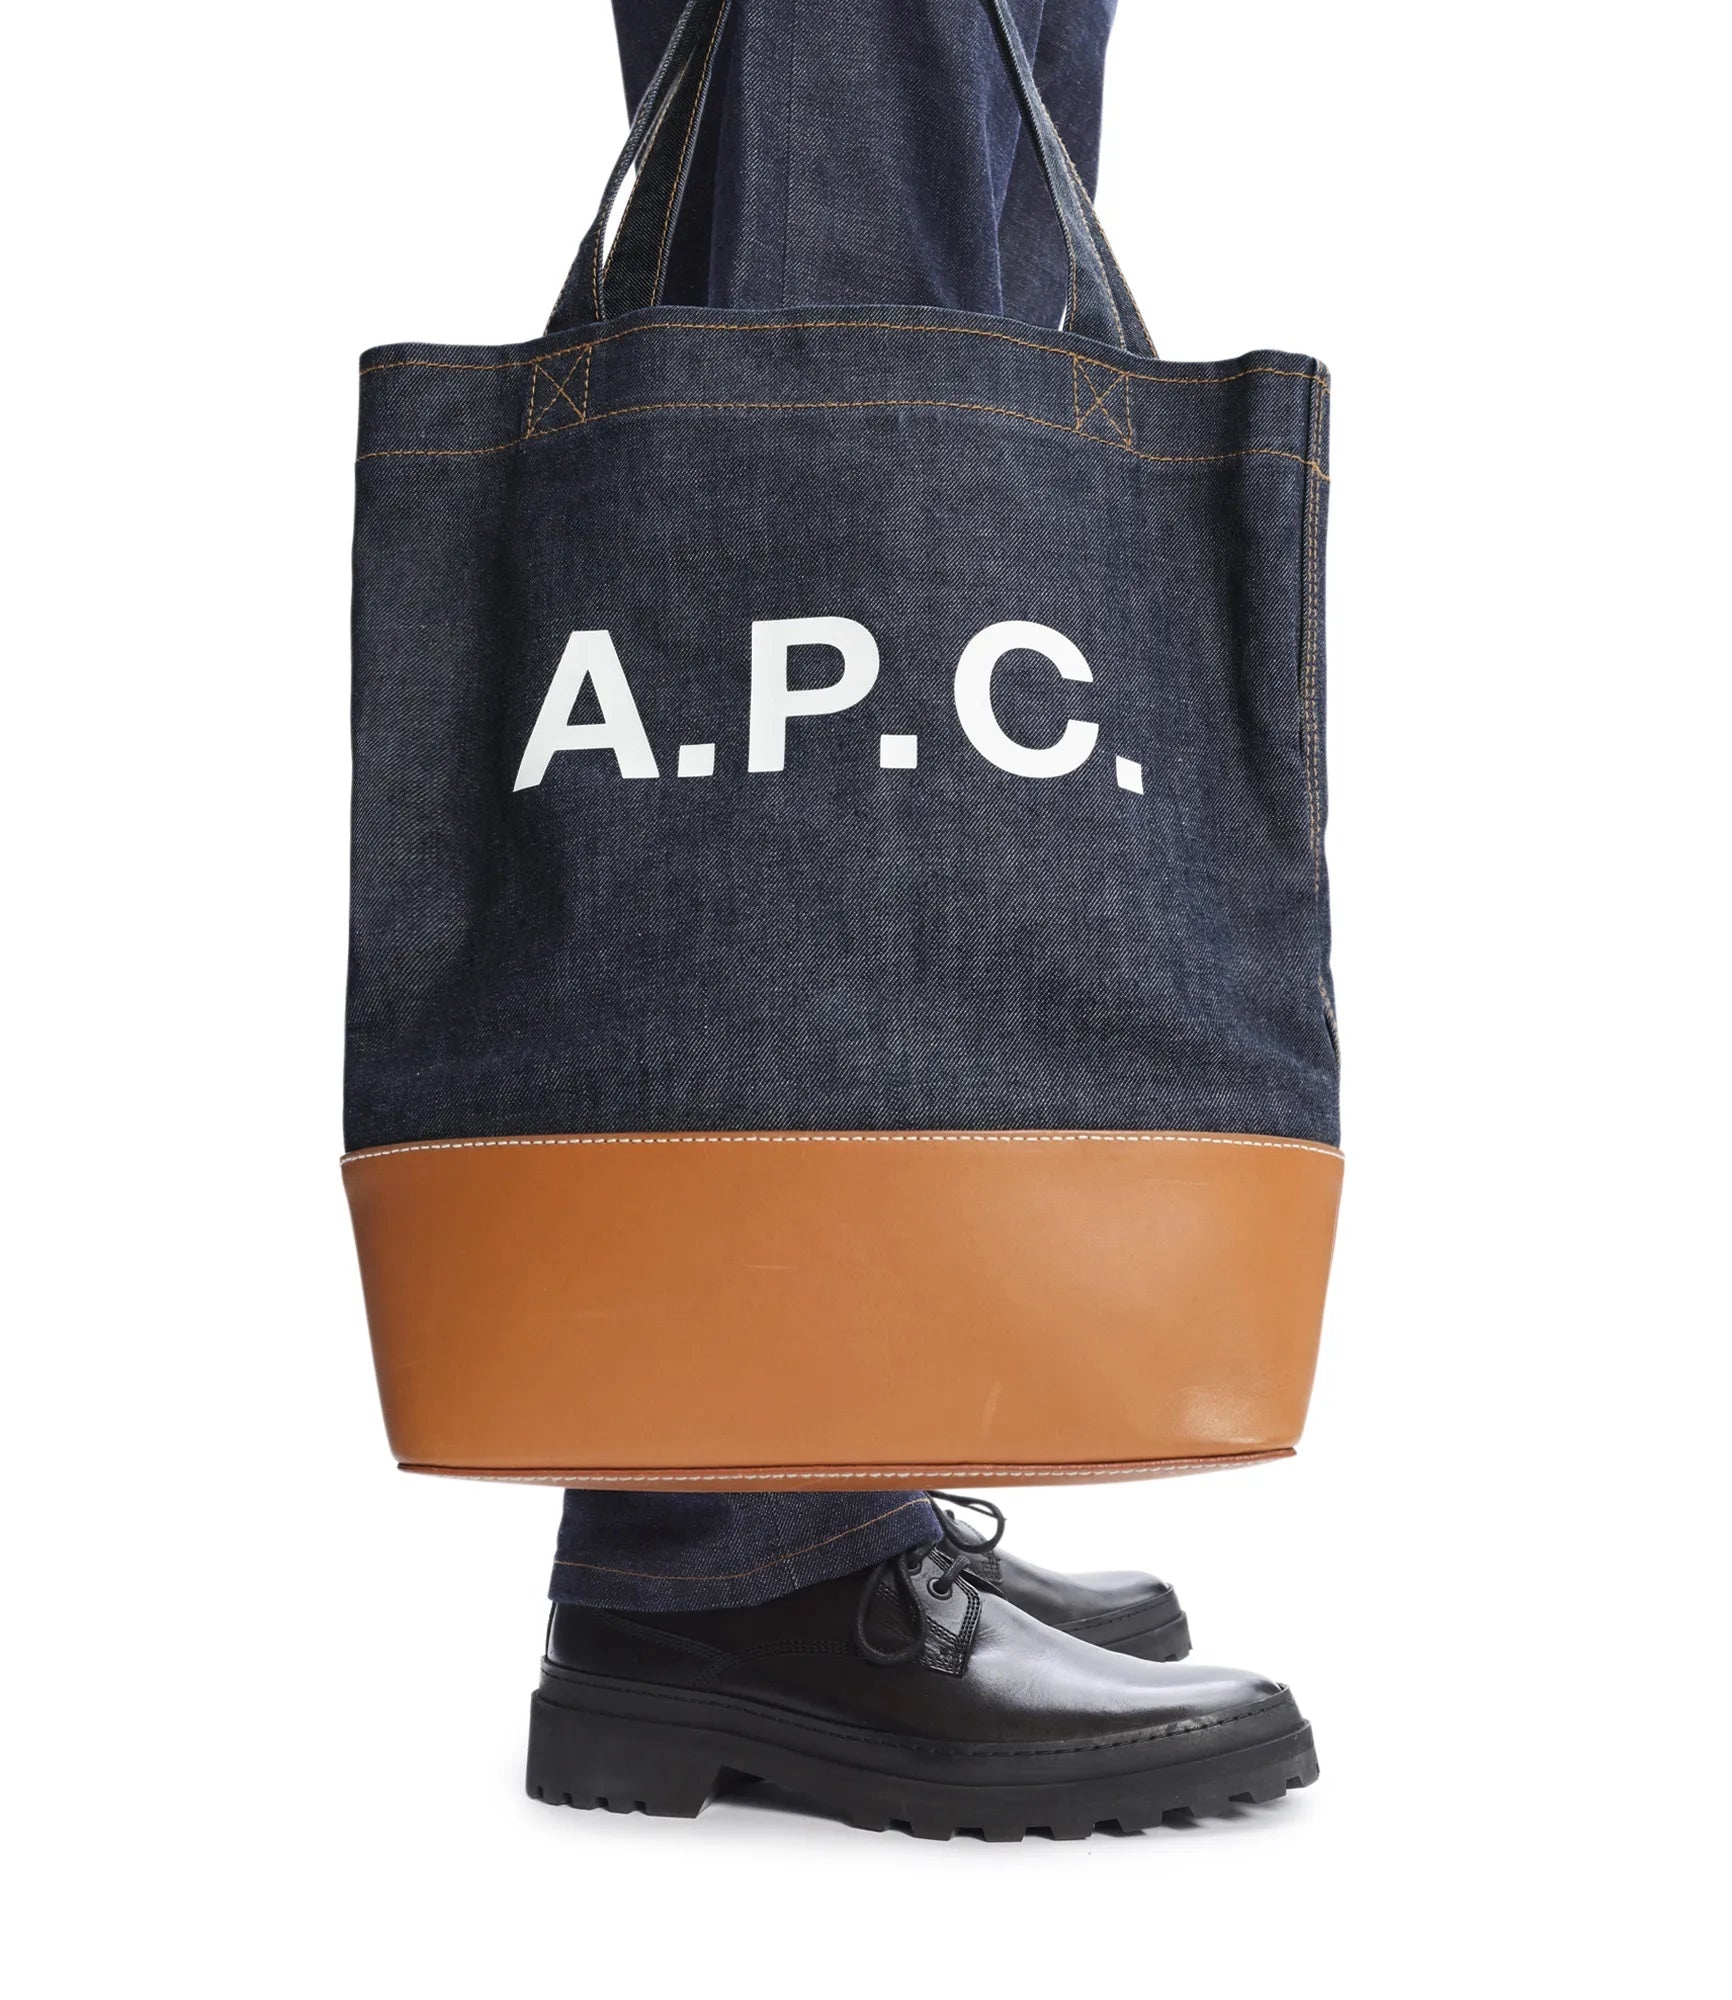 A.P.C. Axelle Logo Tote Bag